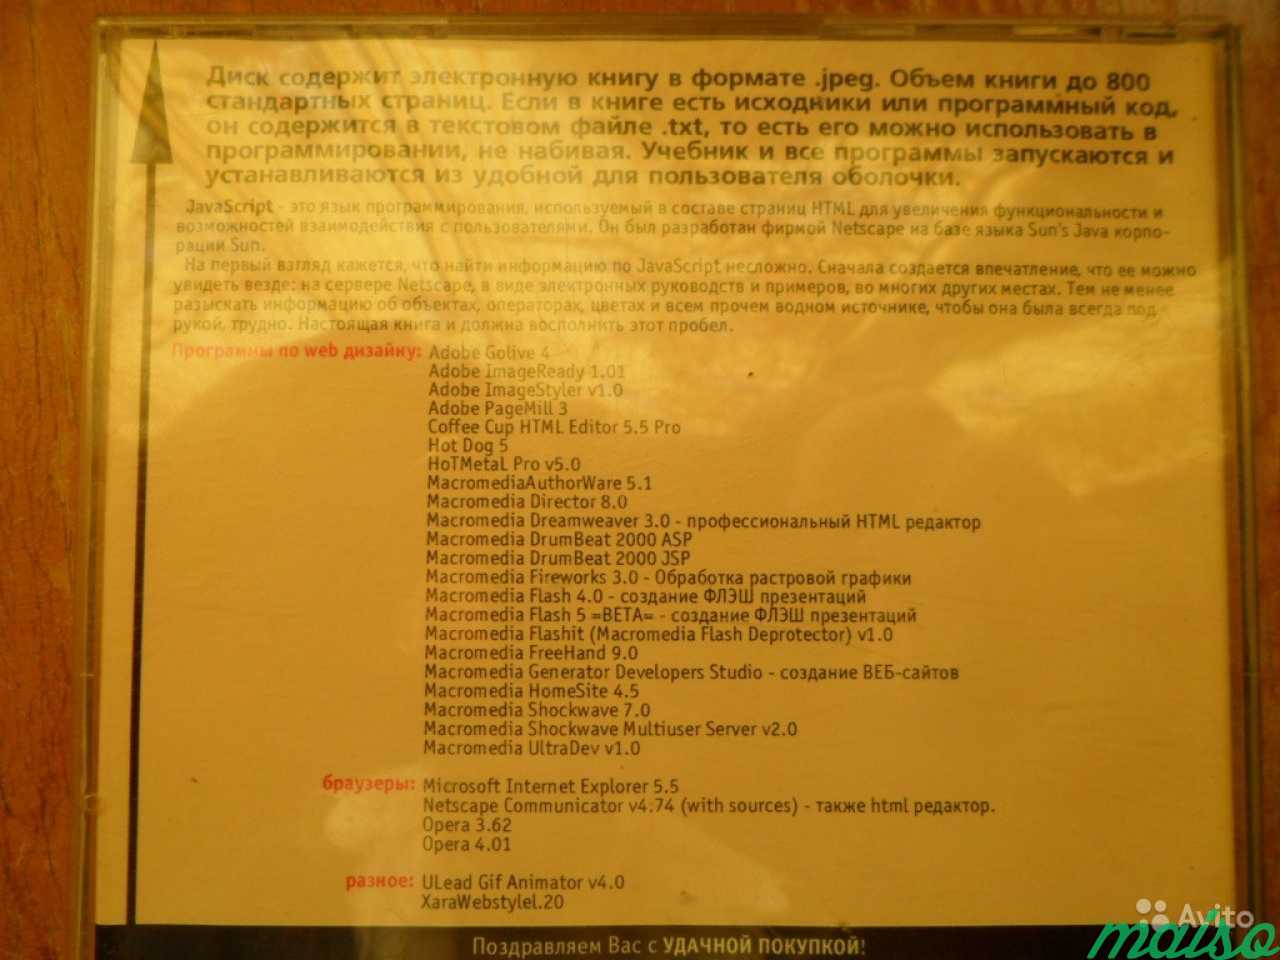 CD-учебник Java Script, программы субд в Санкт-Петербурге. Фото 4